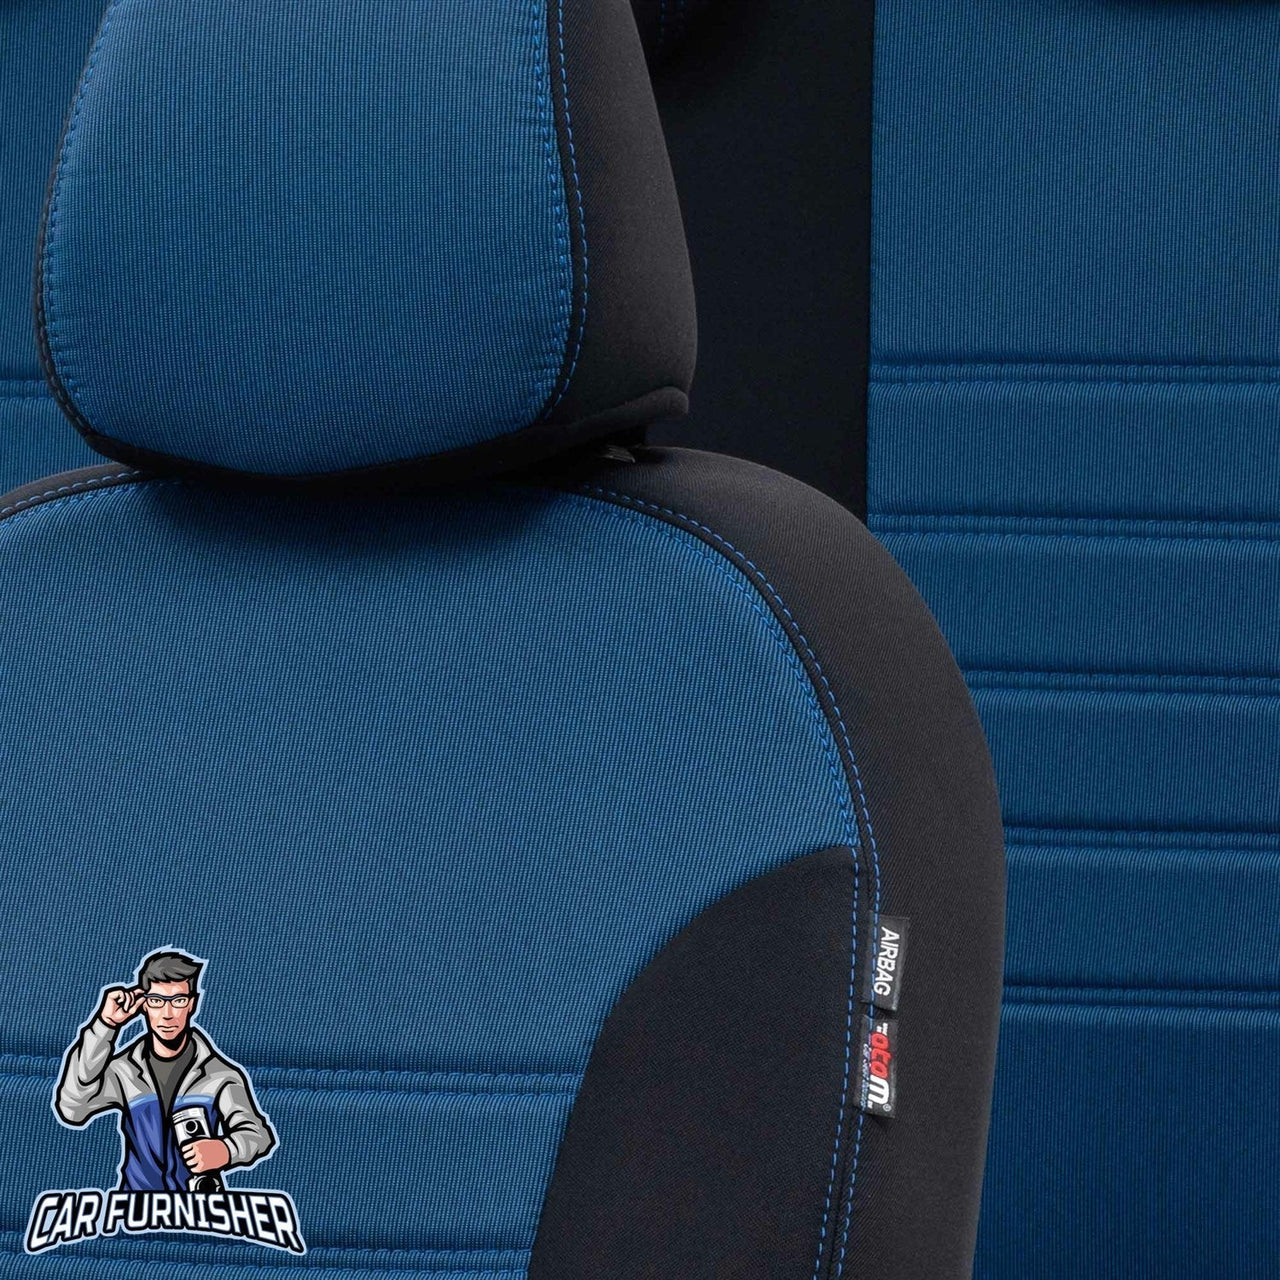 Dacia Spring Seat Covers Original Jacquard Design Blue Jacquard Fabric